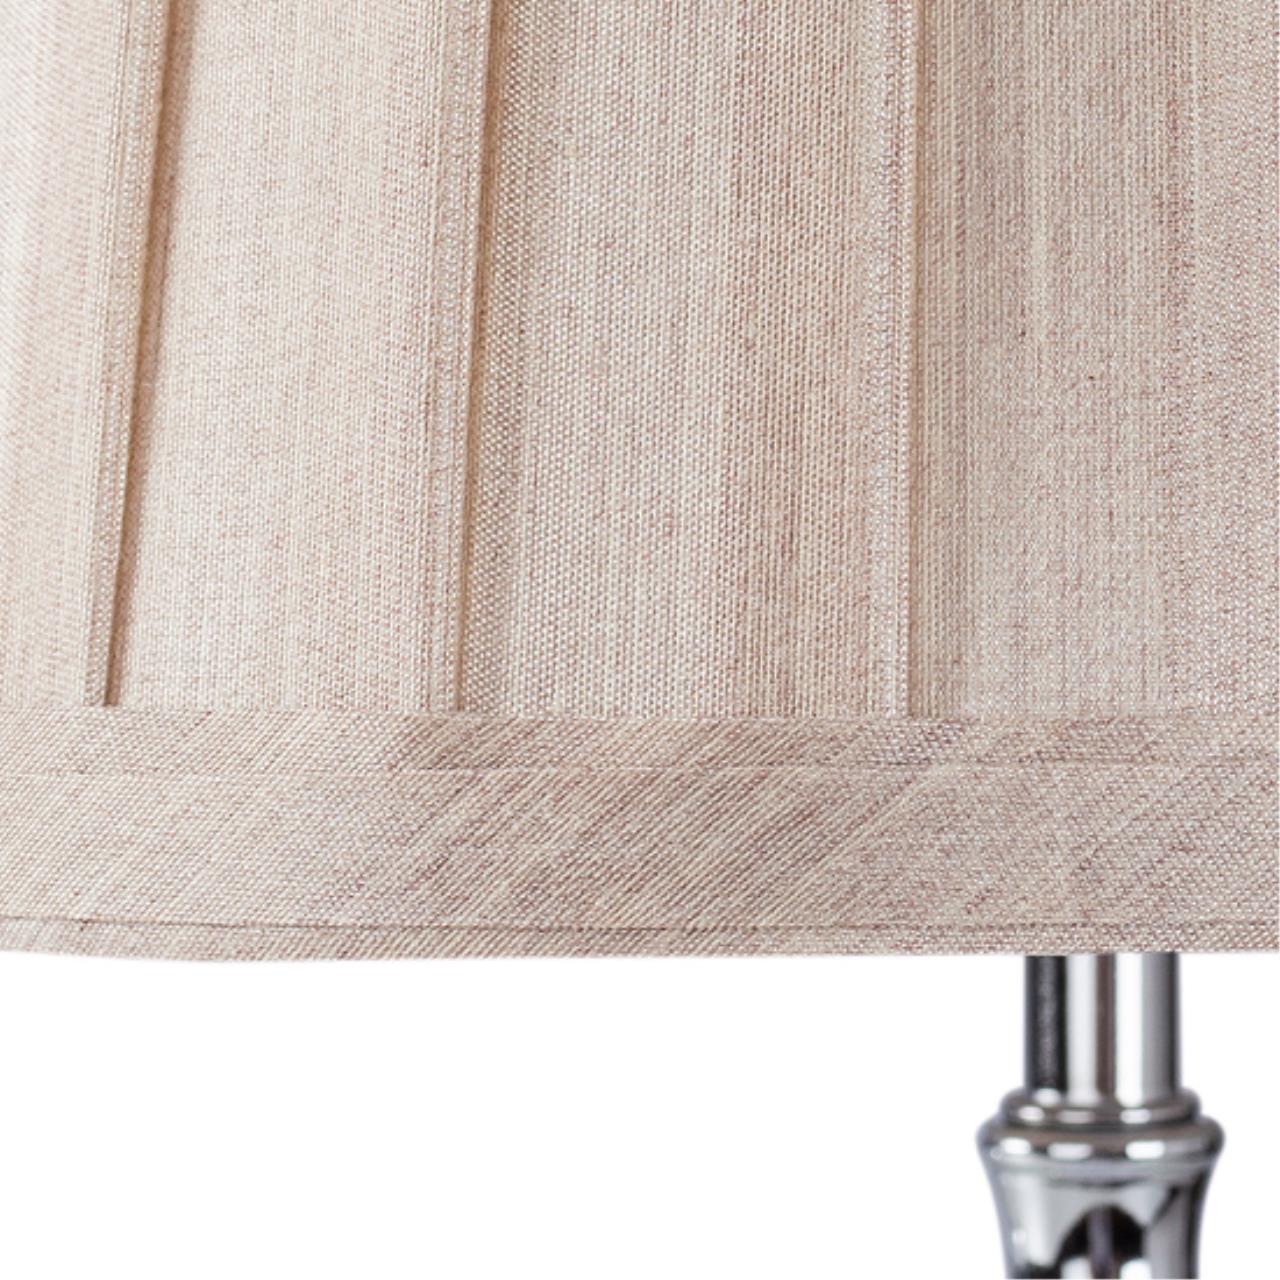 Интерьерная настольная лампа Arte lamp A4024LT-1CC СВЕТИЛЬНИК НАСТОЛЬНЫЙ